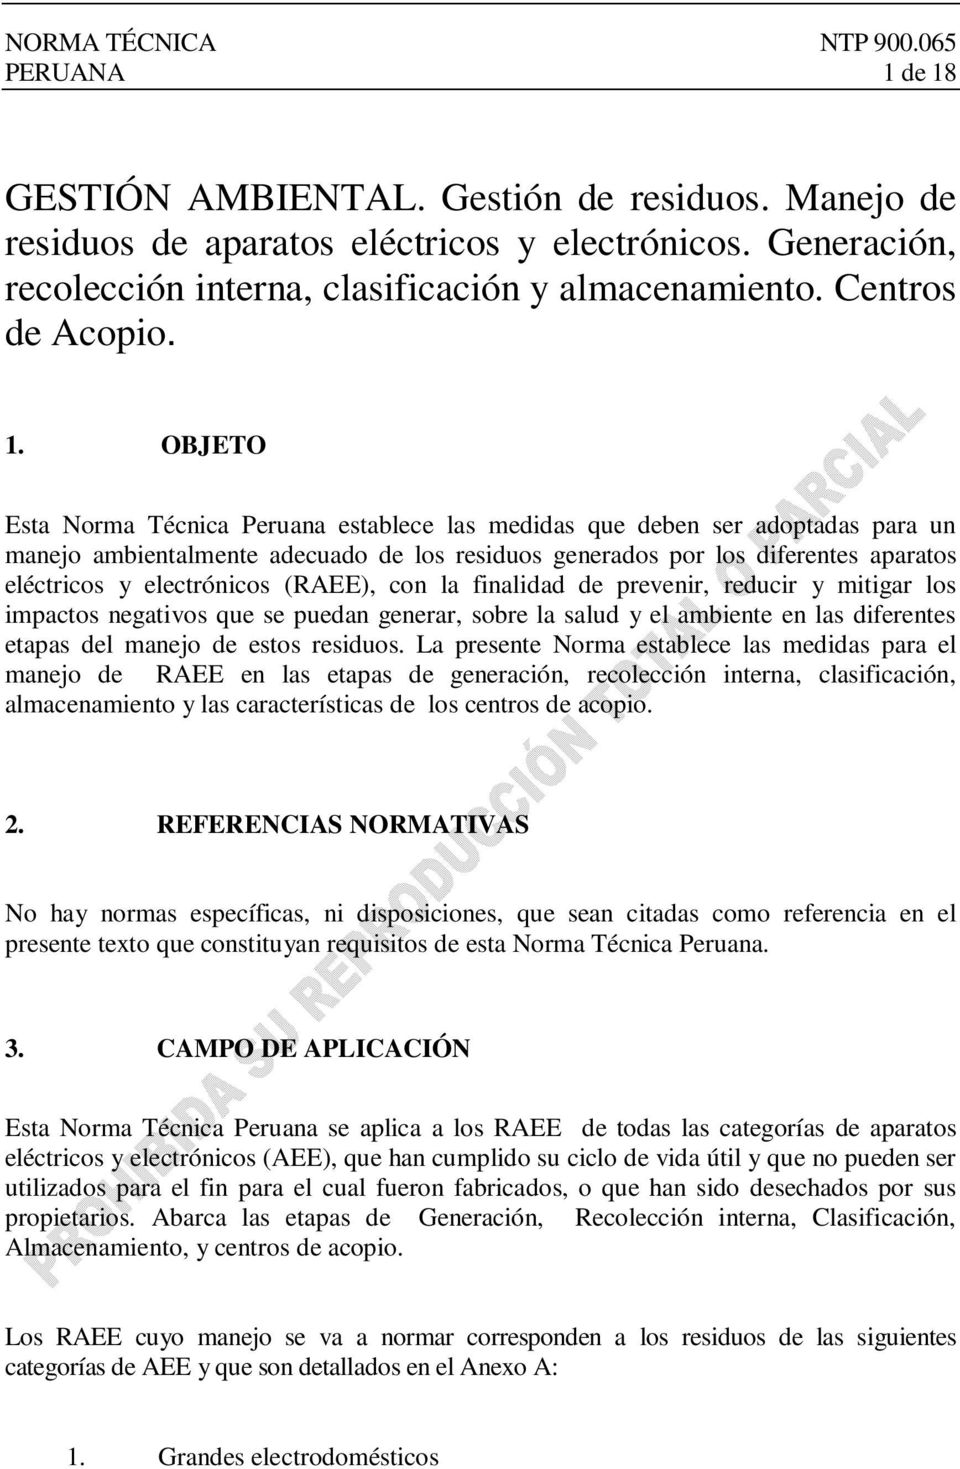 Esta Norma Técnica Peruana establece las medidas que deben ser adoptadas para un manejo ambientalmente adecuado de los residuos generados por los diferentes aparatos eléctricos y electrónicos (RAEE),